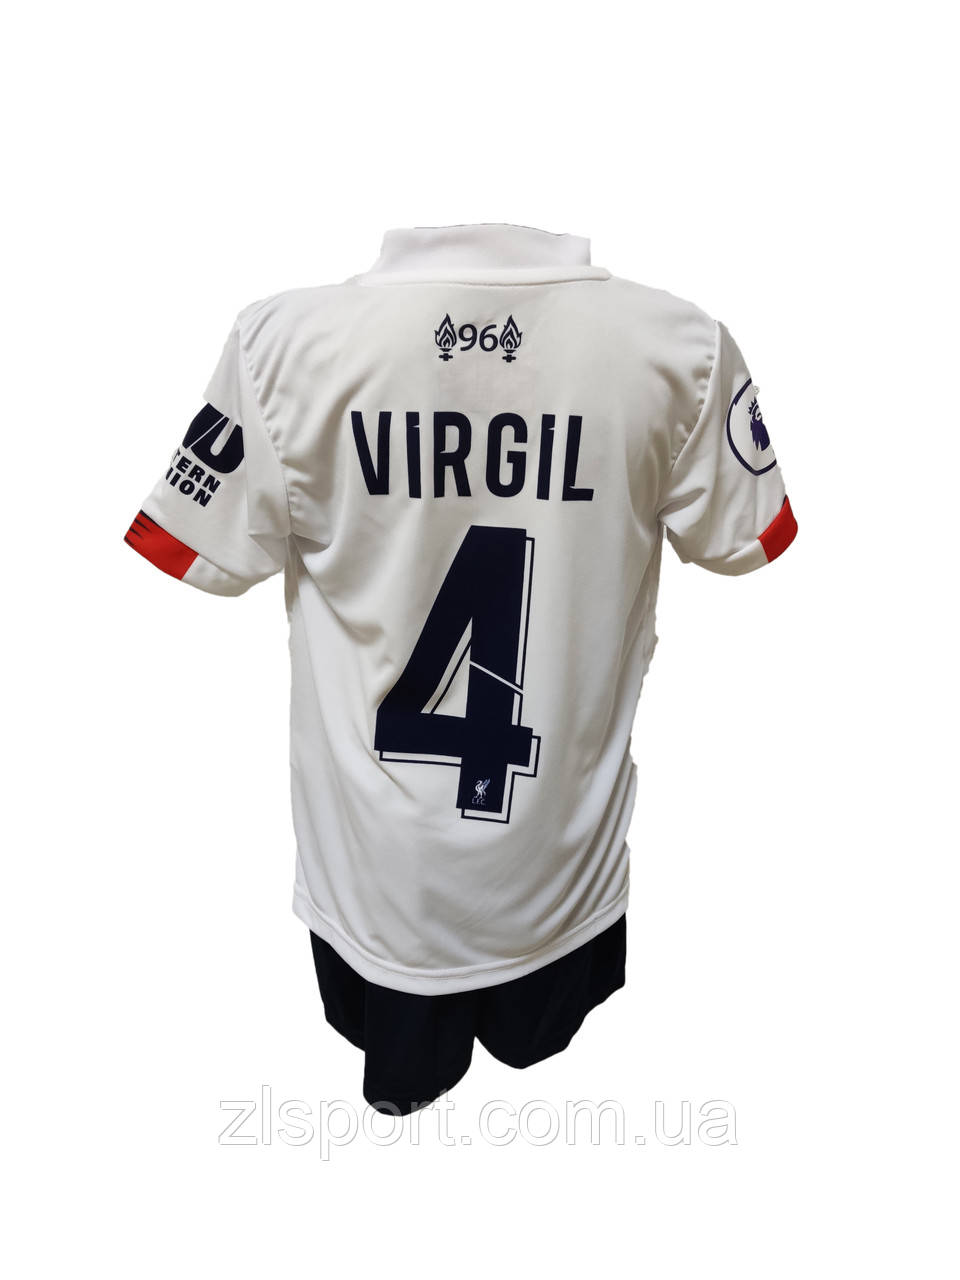 Дитяча футбольна форма Ван Дейк FC Liverpool Virgil Лівепуль біла номер 4